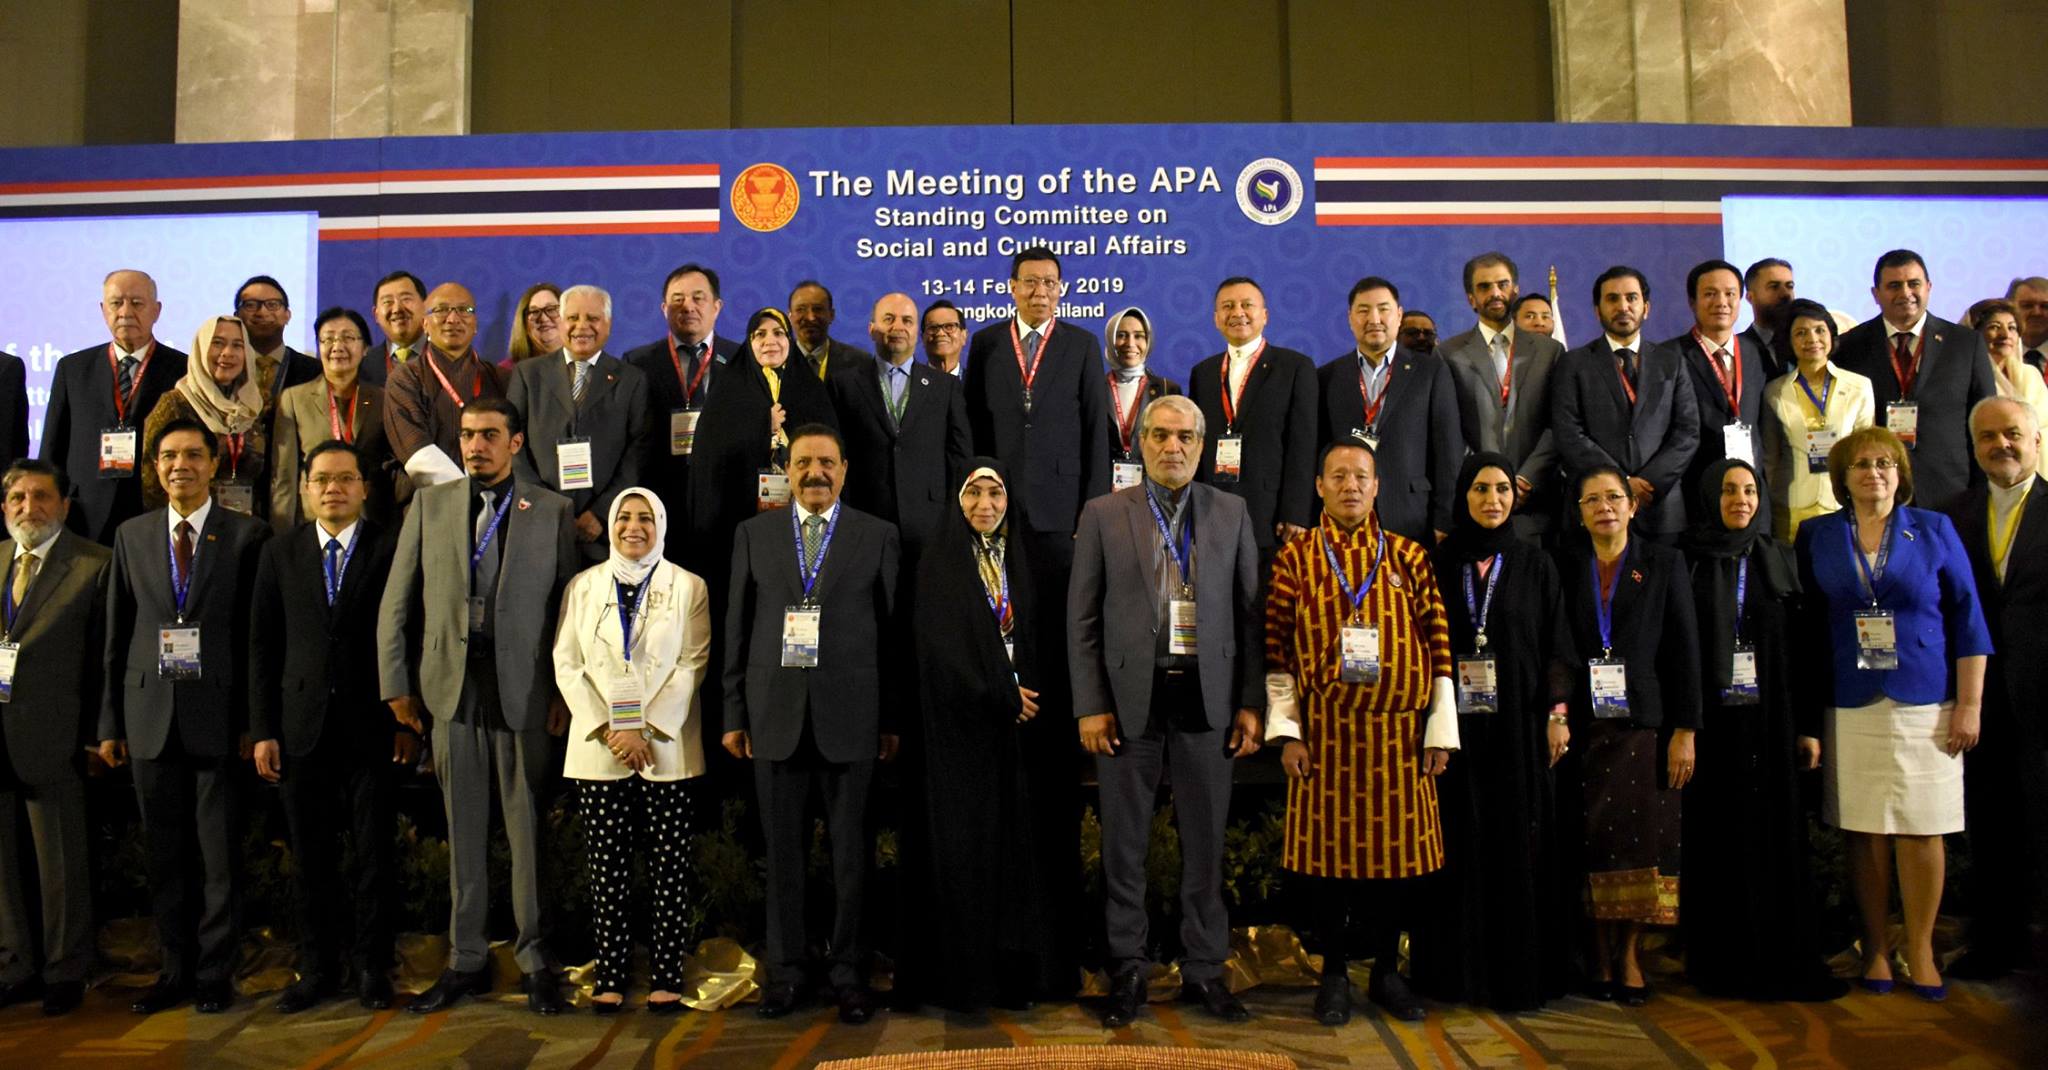 การประชุมคณะกรรมาธิการว่าด้วยสังคมและวัฒนธรรมของสมัชชารัฐสภาเอเชีย Asian Parliamentary Assembly – AP